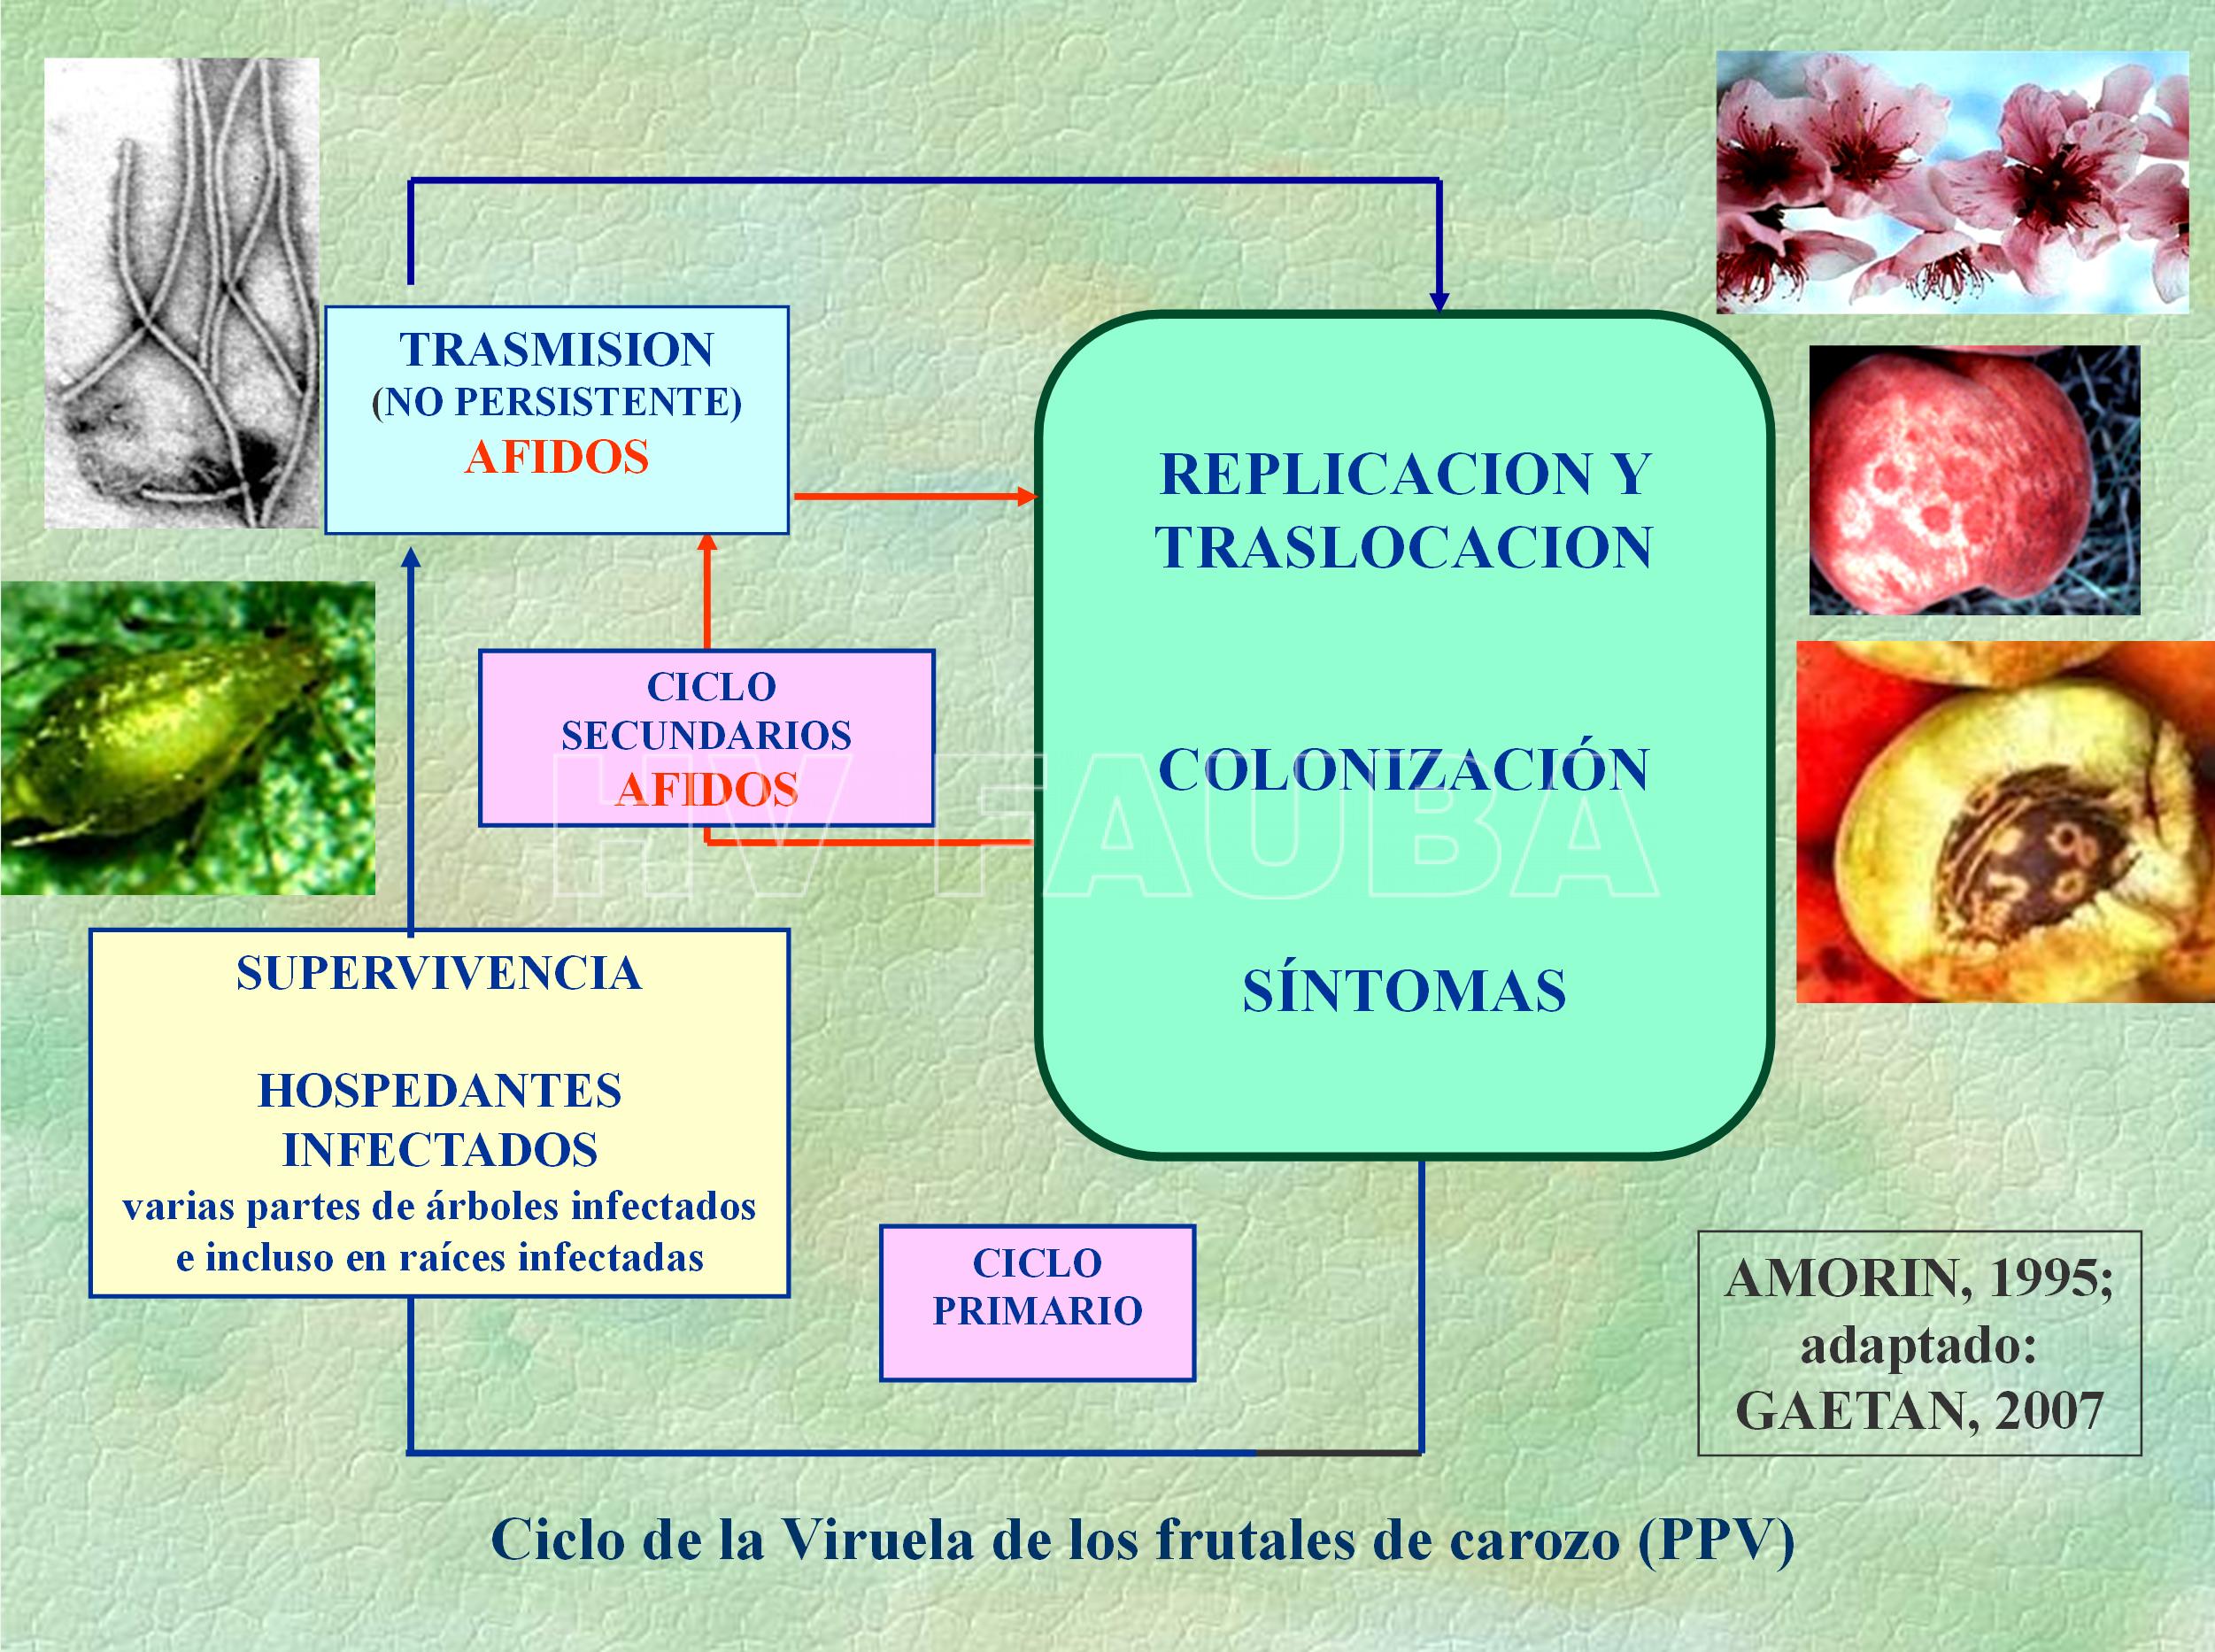 Ciclo agronómico de la Viruela de los frutales de carozo (Plum Pox Virus-PPV). Fuente: Amorin L, 1995; adaptado por Gaetan SA, 2007.